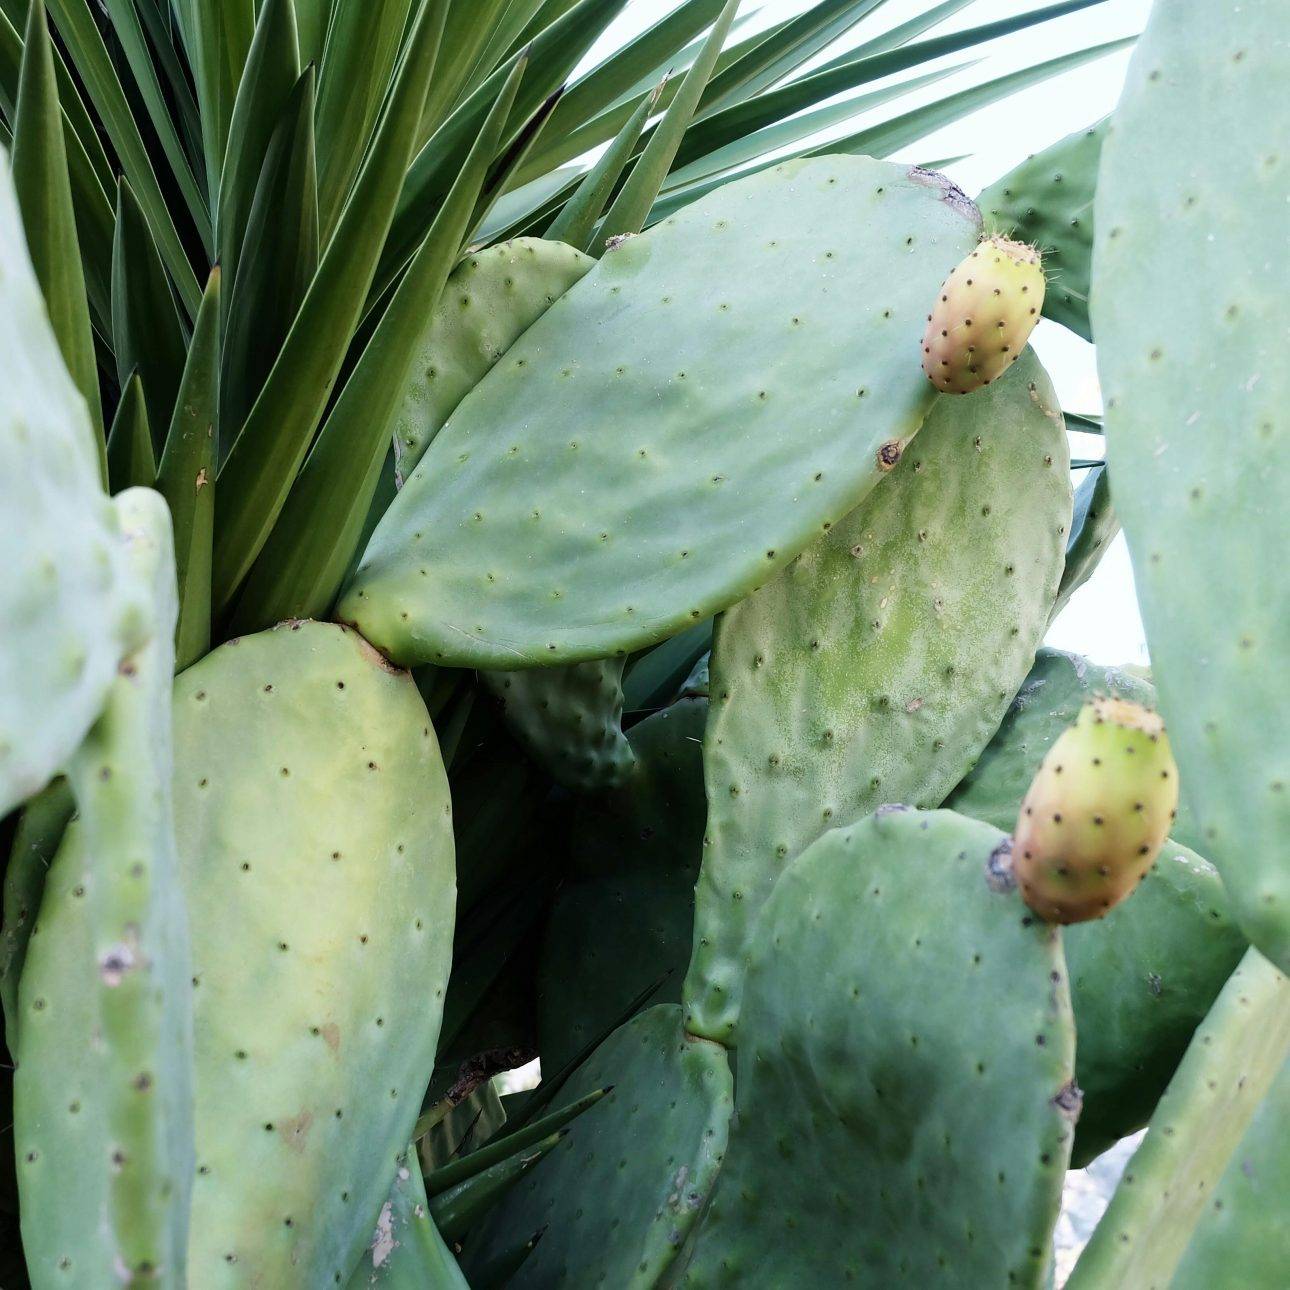 Le cactus nopal un nouvel allié pour votre santé, la perte de poids et le vieillissement cellulaire